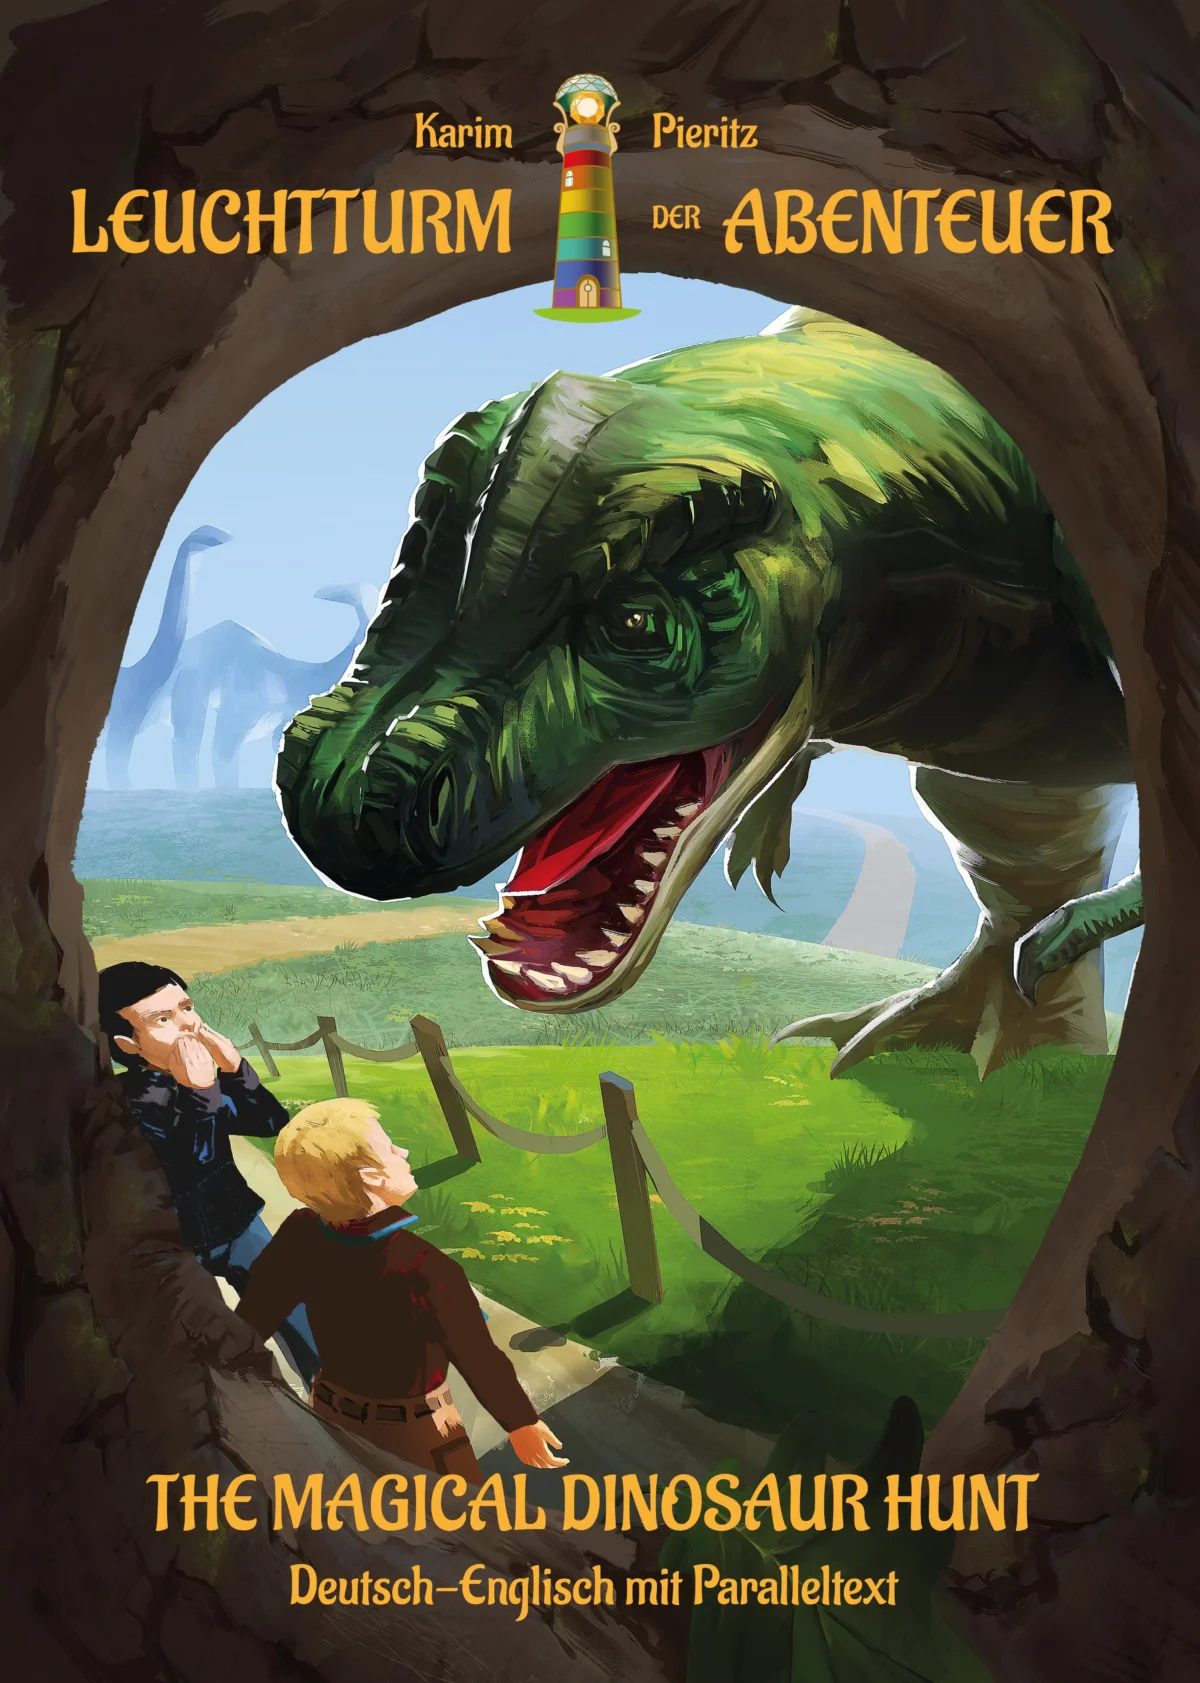 Zweisprachiges Kinderbuch in Deutsch und Englisch